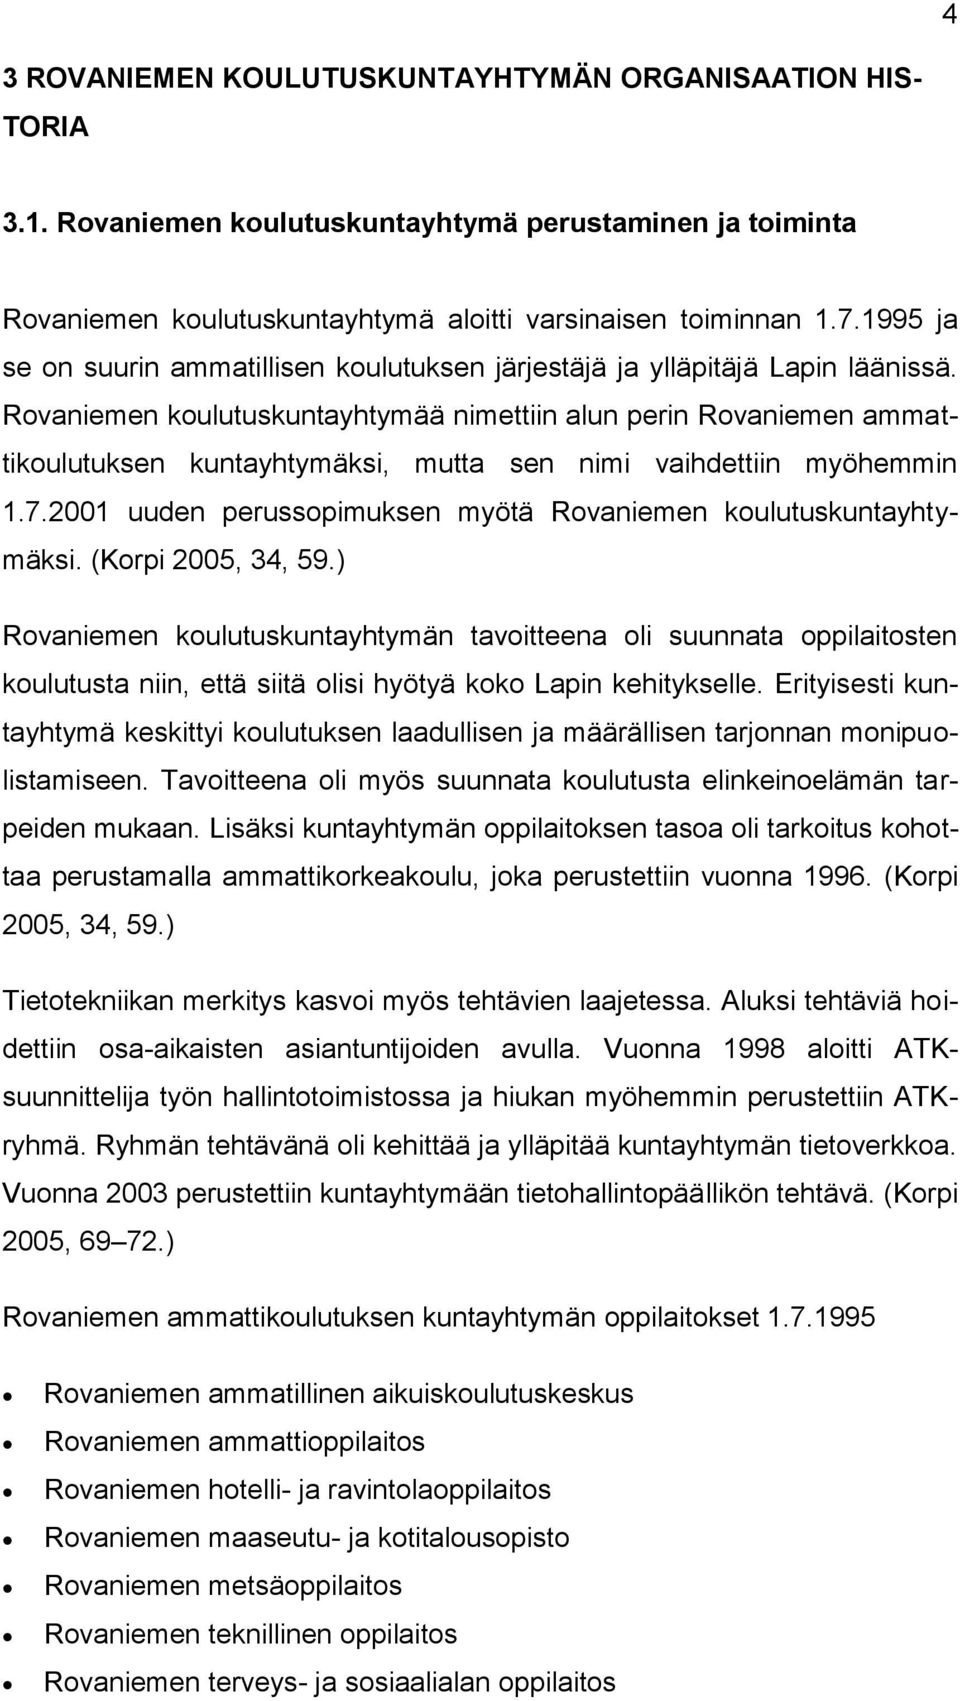 Rovaniemen koulutuskuntayhtymää nimettiin alun perin Rovaniemen ammattikoulutuksen kuntayhtymäksi, mutta sen nimi vaihdettiin myöhemmin 1.7.